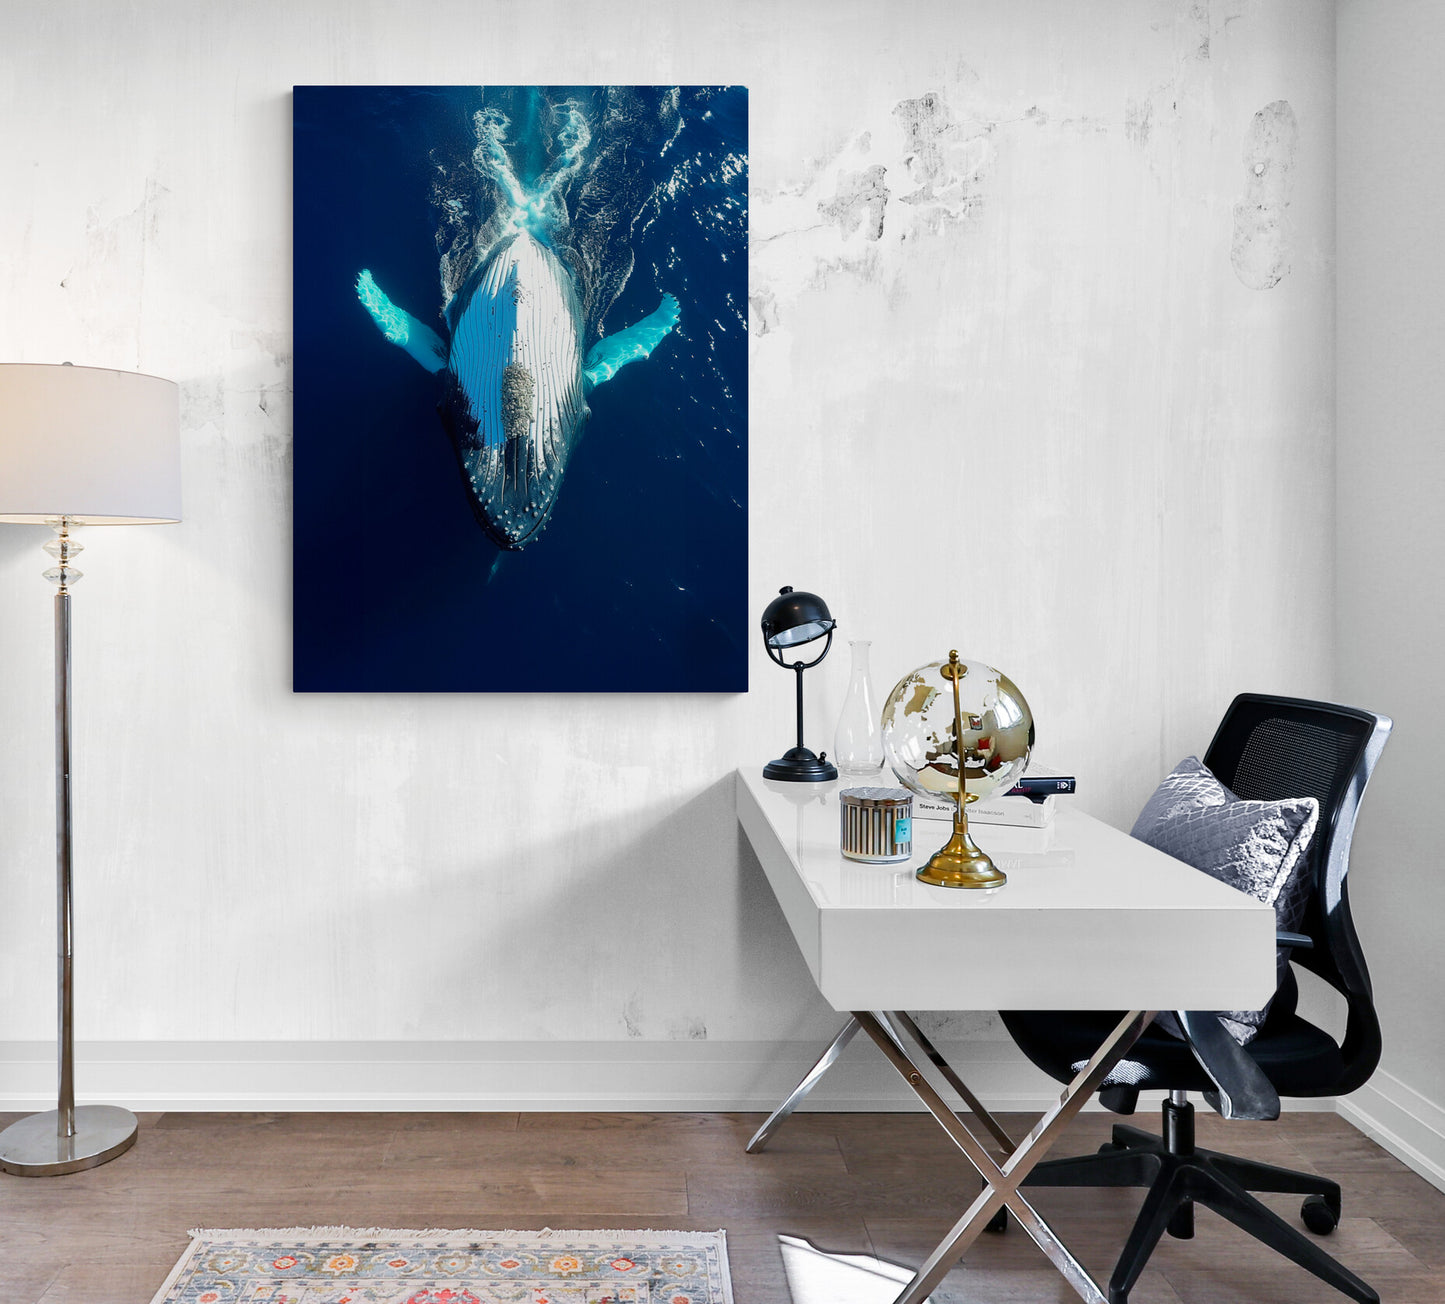 grand bureau blanc, pieds en metal, objets décoratifs, chaise sur roulettes, coussin bleu, lampe sur pied, mur blanc, affiche bleu baleine.